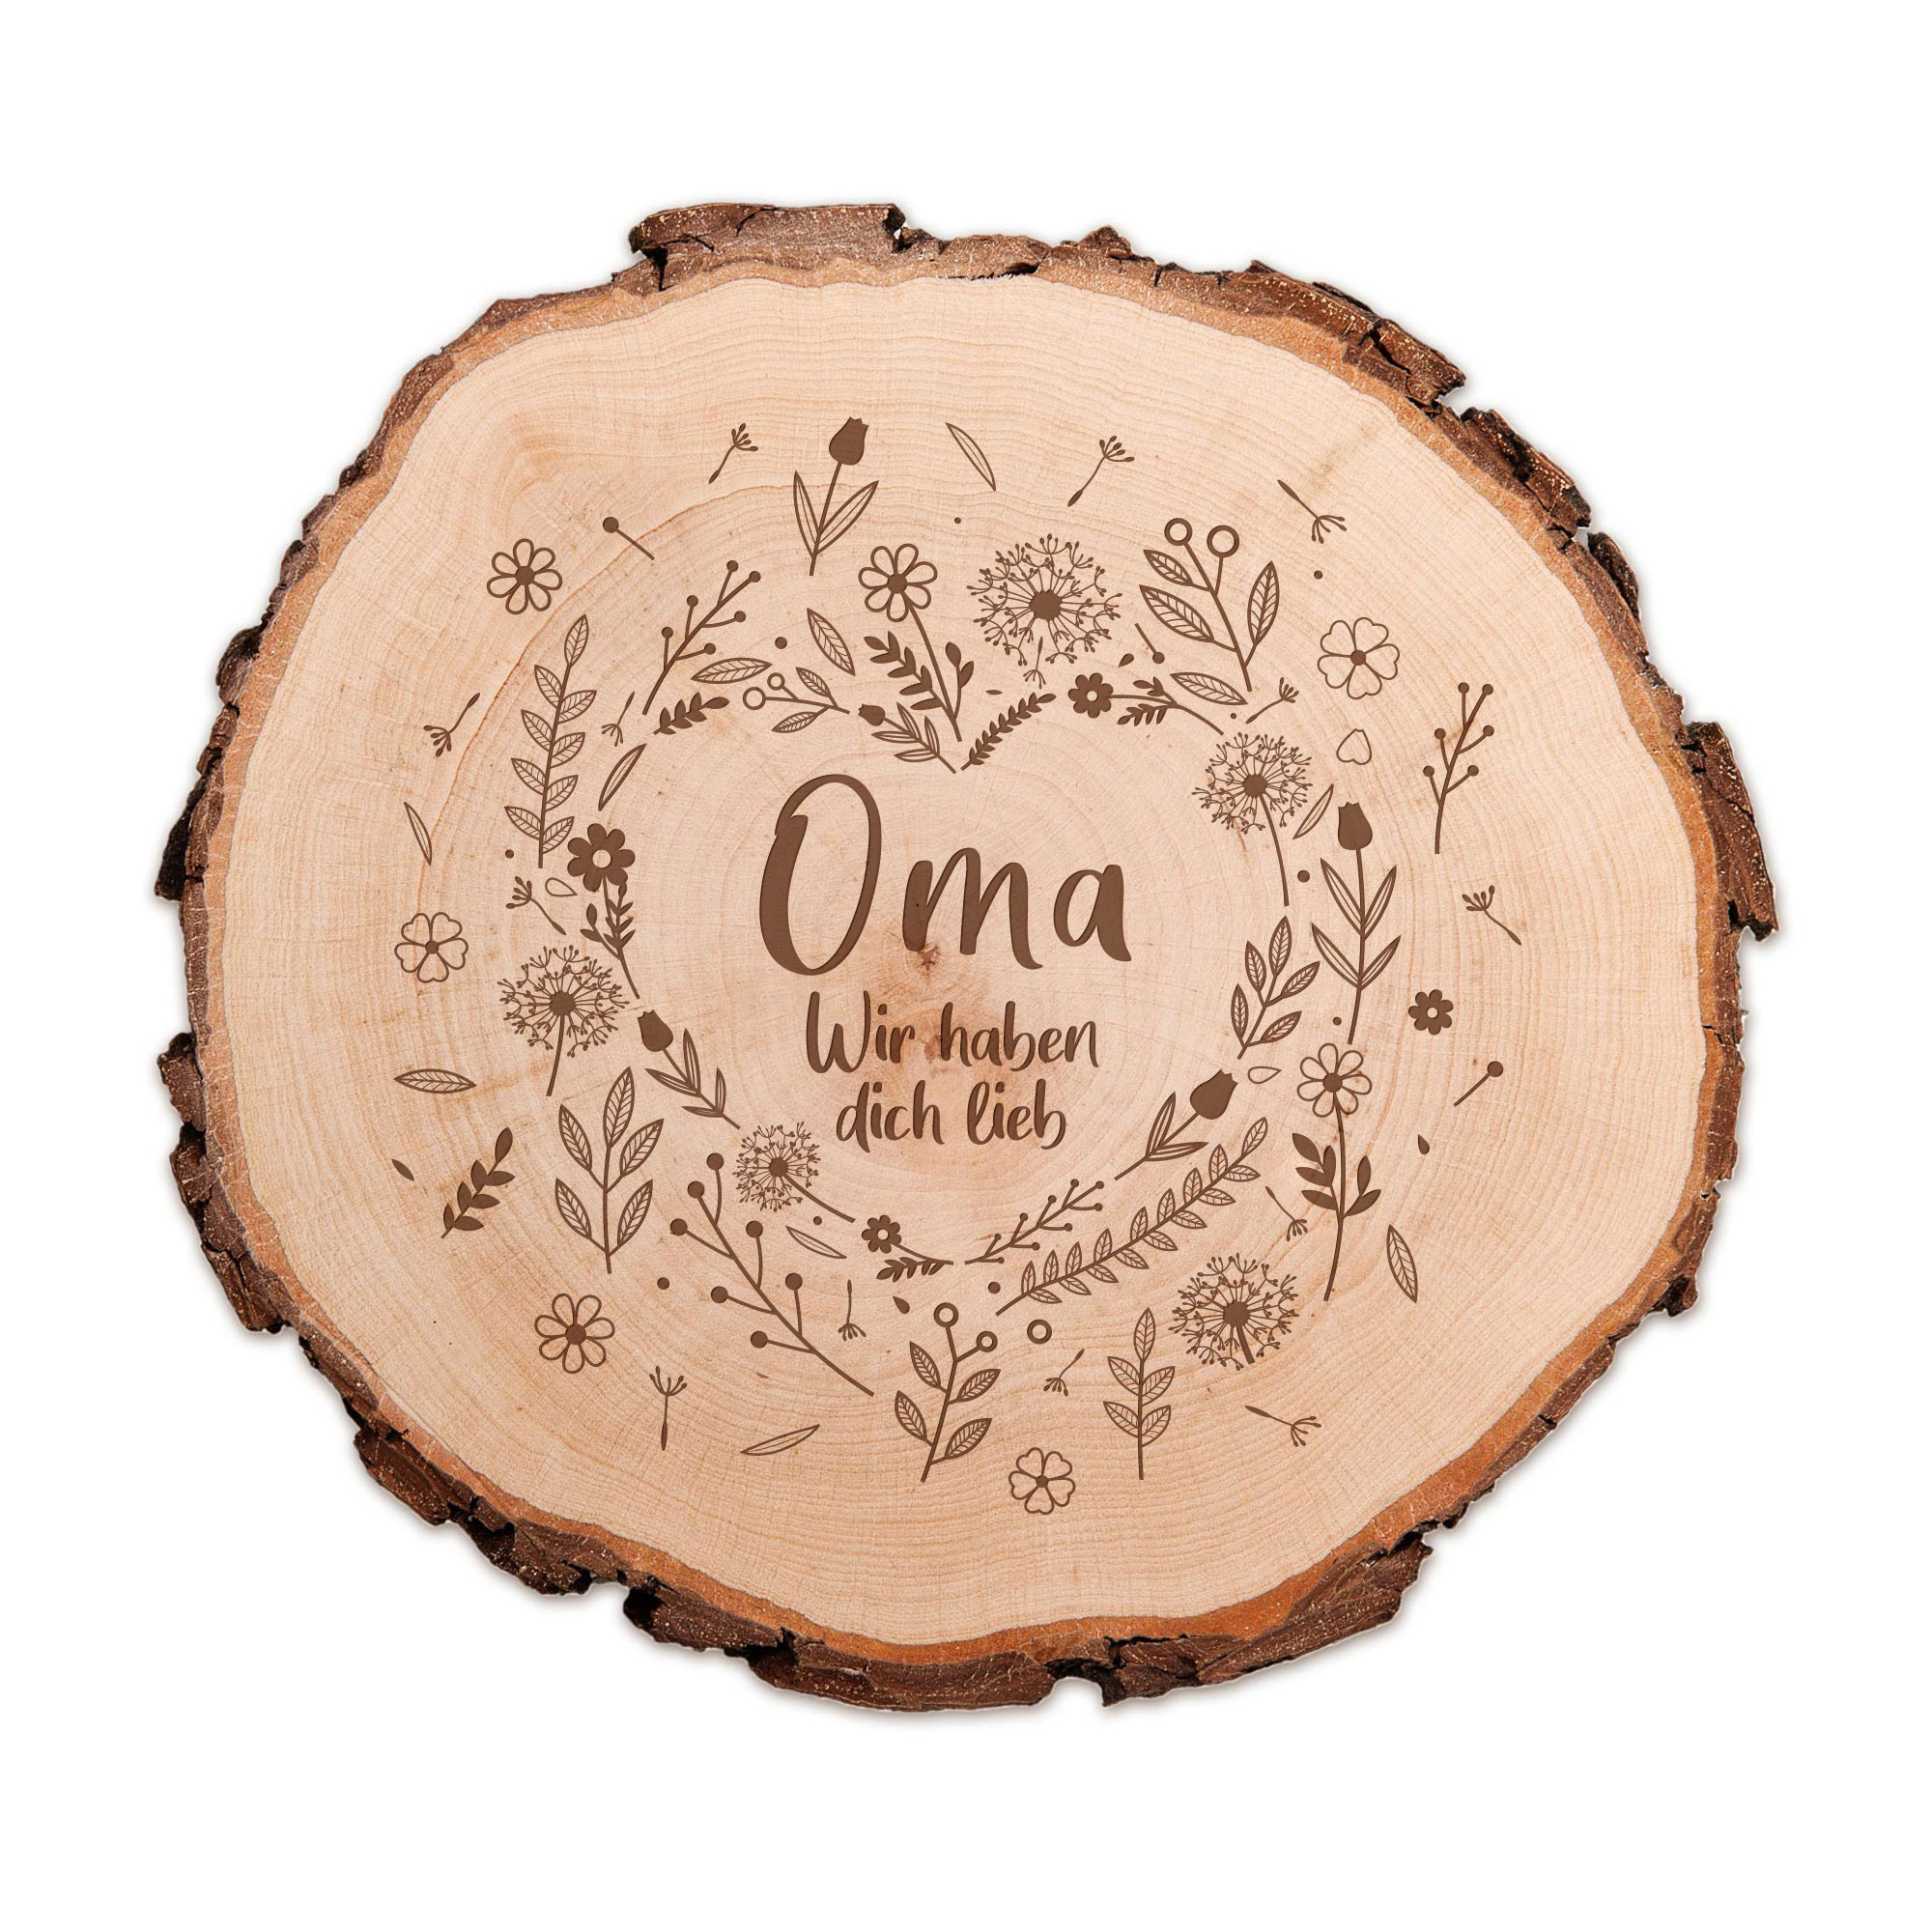 Holz Dekoscheibe mit Gravur für Oma, Rindenscheibe als Geschenkidee für Oma, Rundscheibe mit Blumenherz Motiv, Natürliche Astscheibe mit Rinde